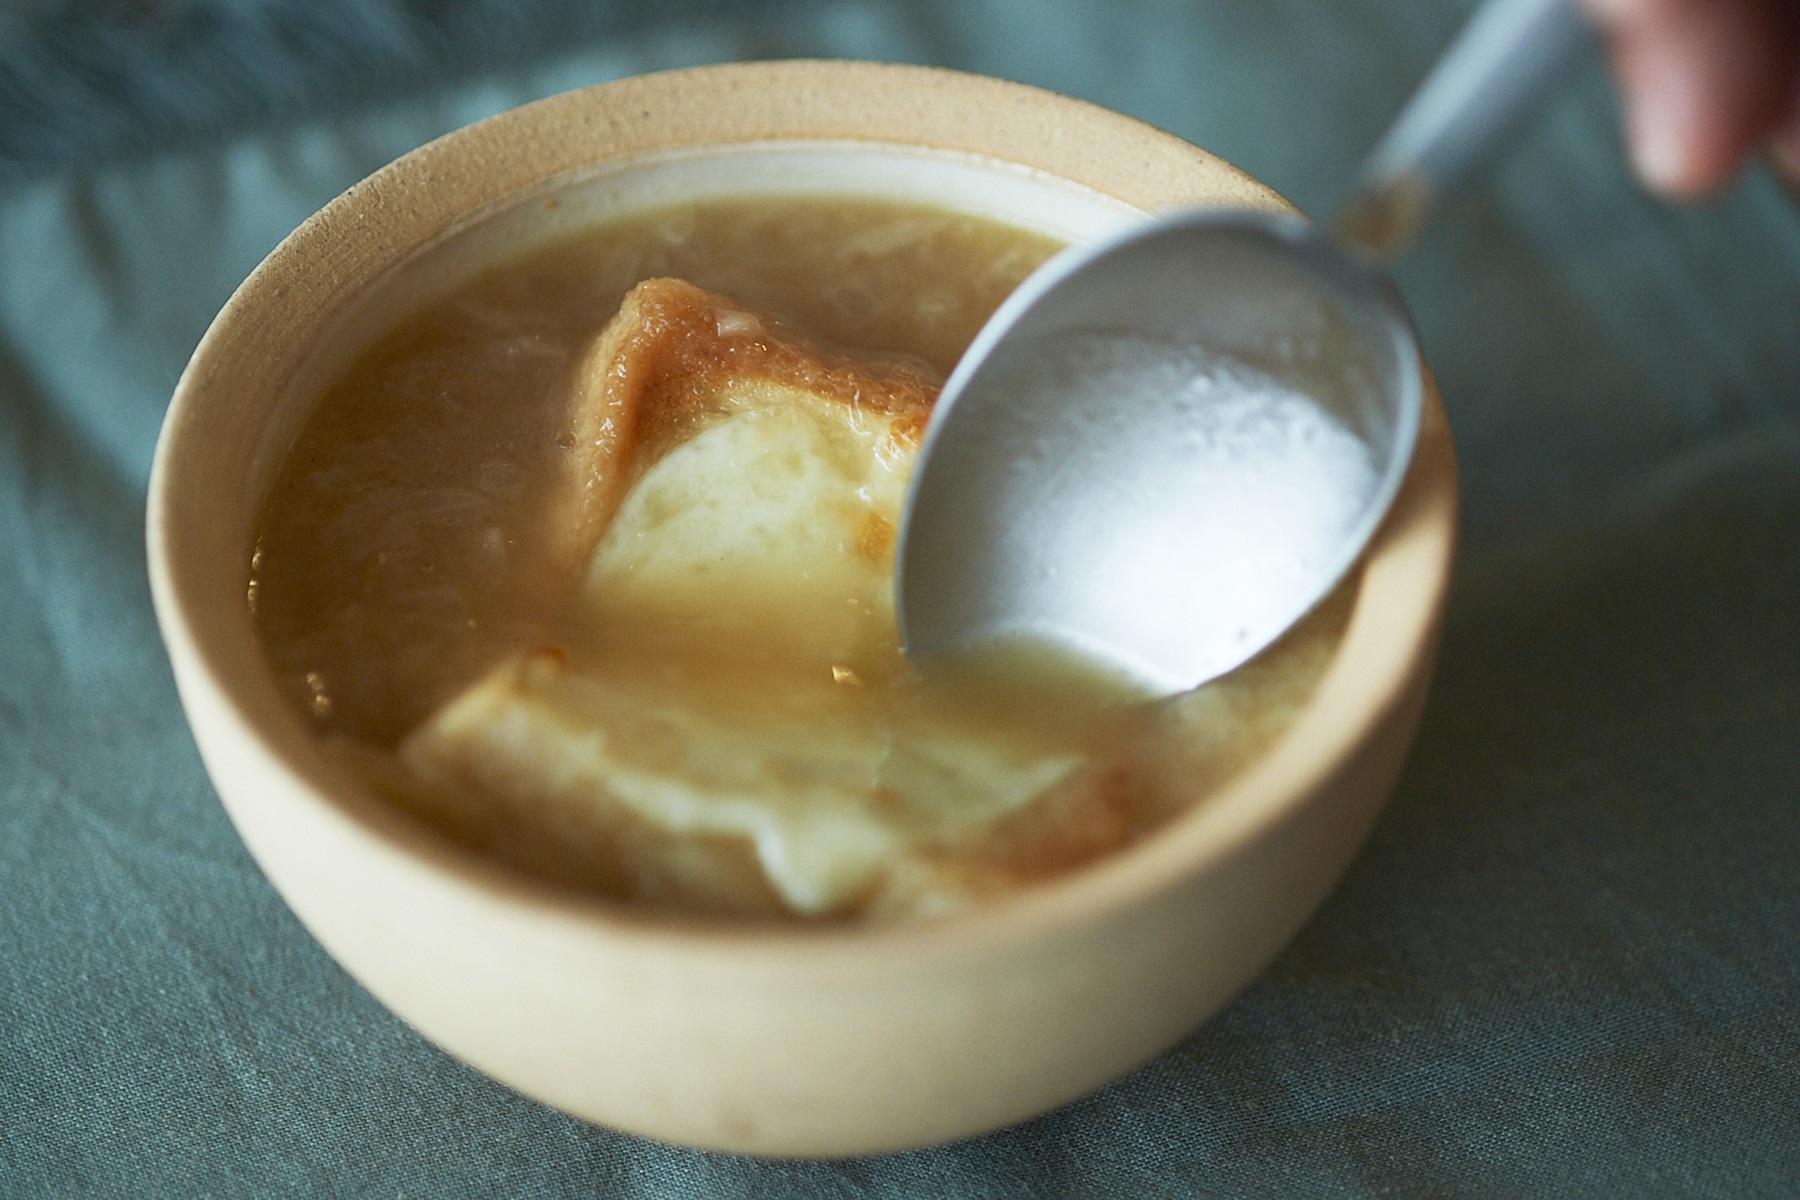 オニオンスープ とぶんぶんチョッパー スープをじっくりつくる 手軽につくる 公式 Dancyu ダンチュウ